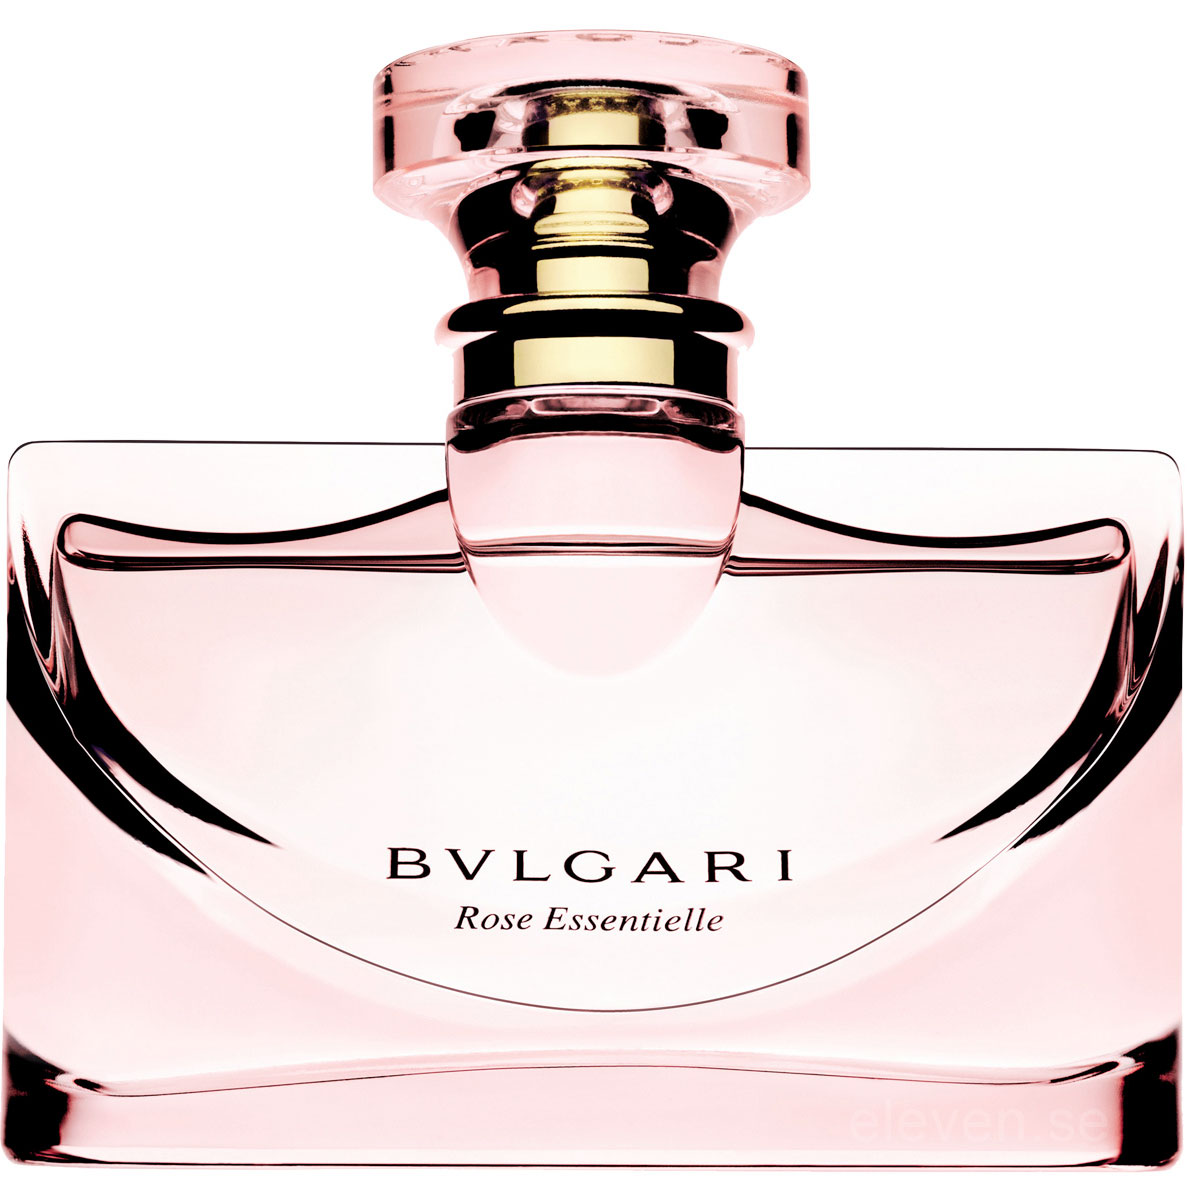 Bvlgari Rose Essentielle Parfum